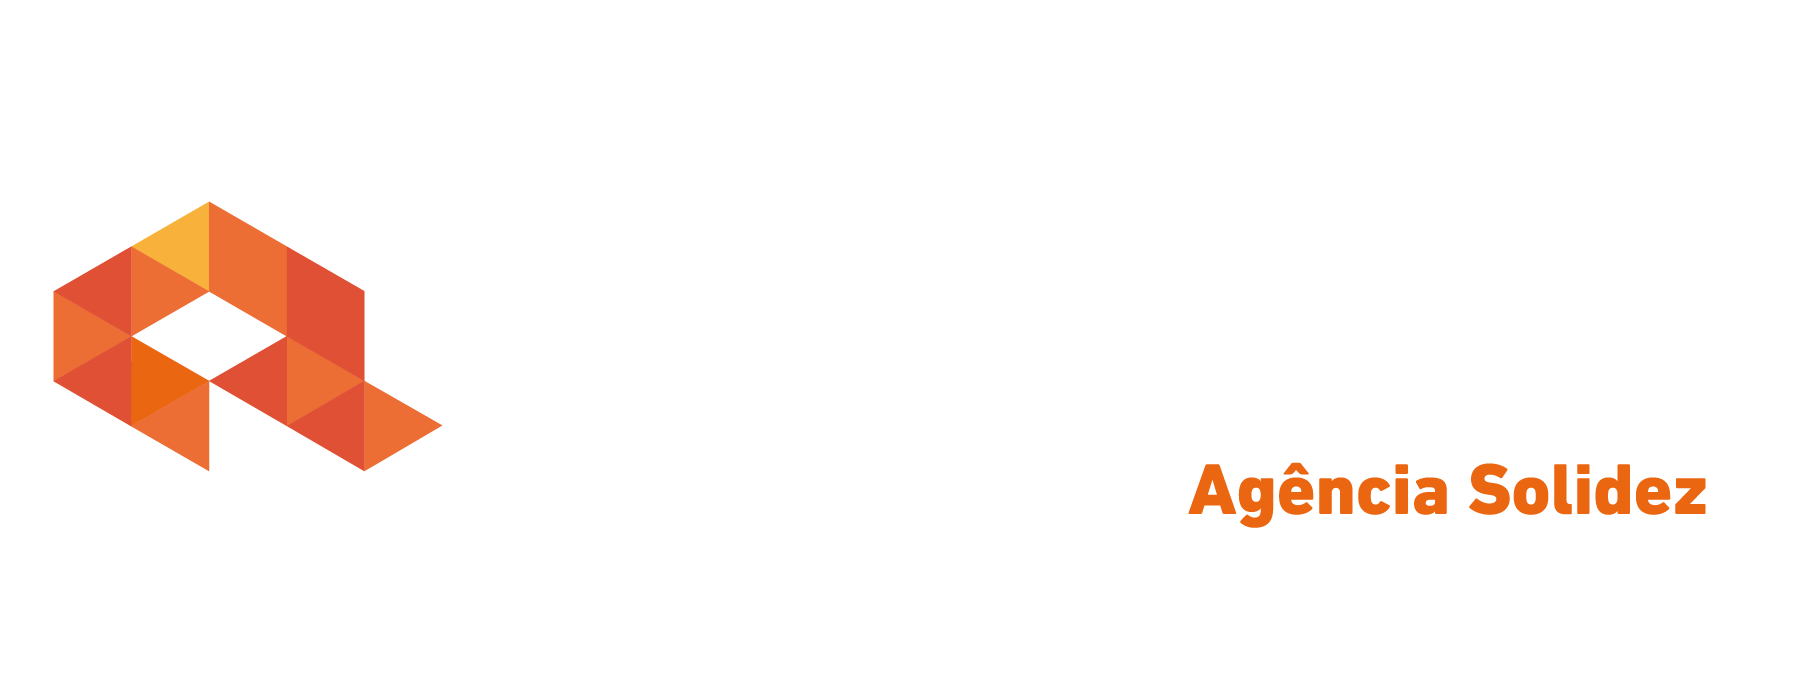 Logo crédito real Crédito Real Solidez